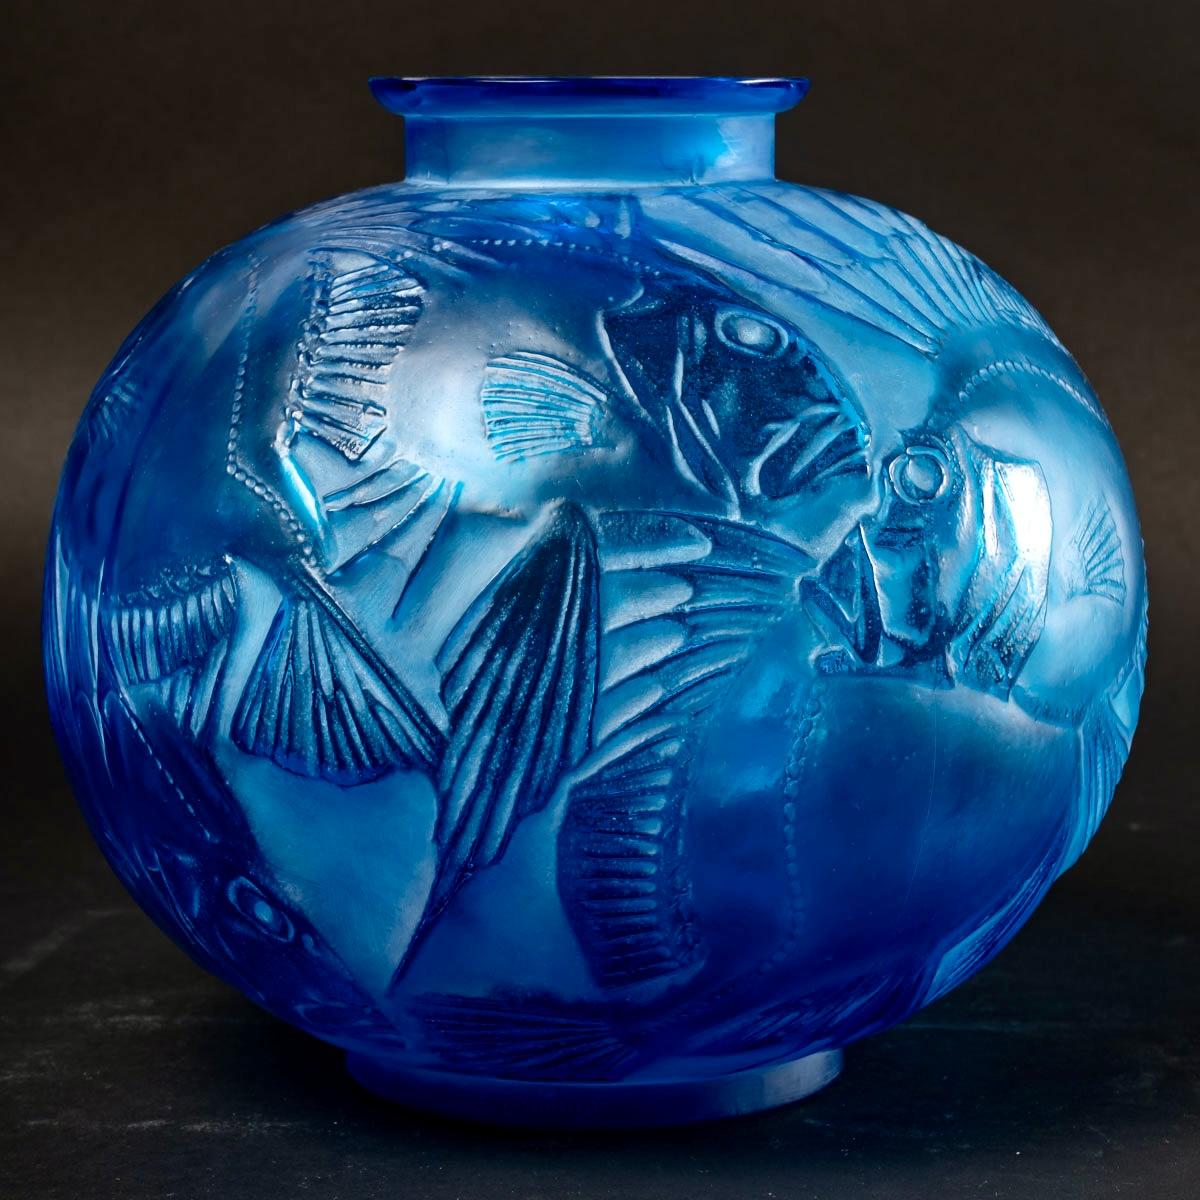 1921 Ren Lalique Poissons-Vase aus elektrisch blauem Glas mit weißer Patina, Fische (Geblasenes Glas)